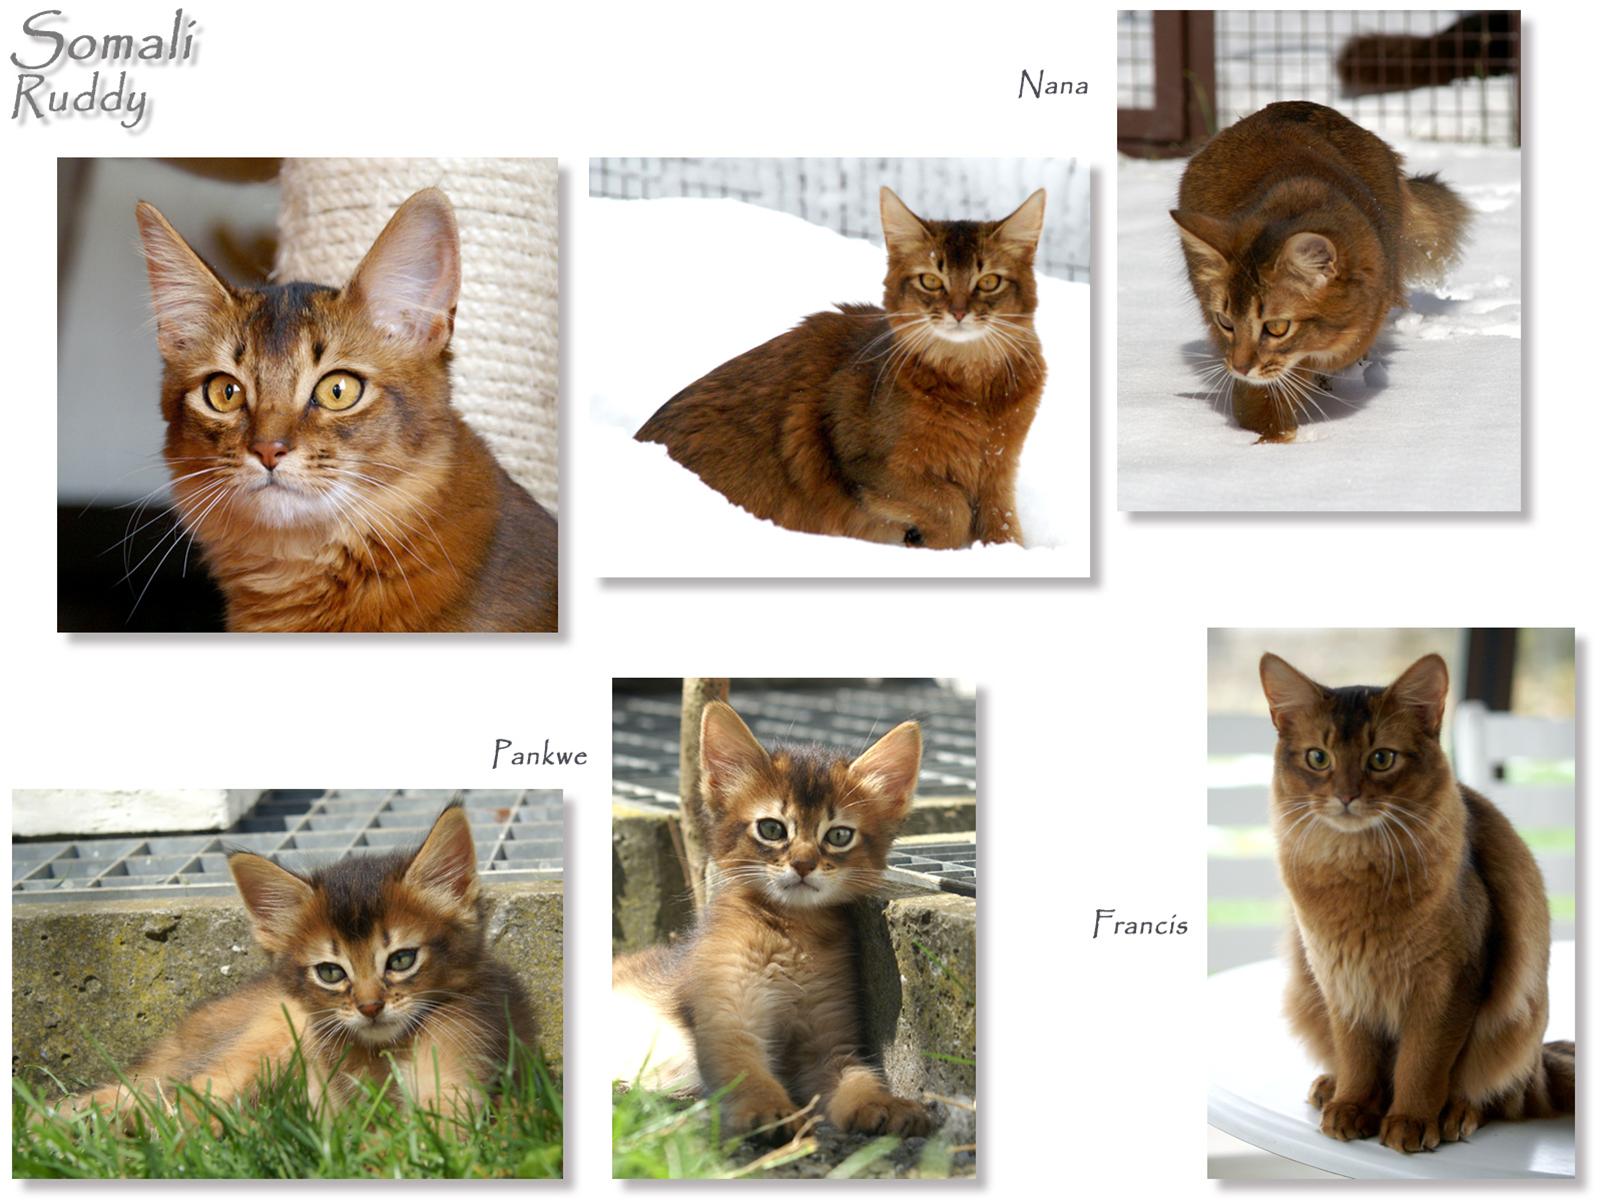 かわいい猫画像No.42「猫−ソマリの壁紙画像「スナップショット・写真色々」」